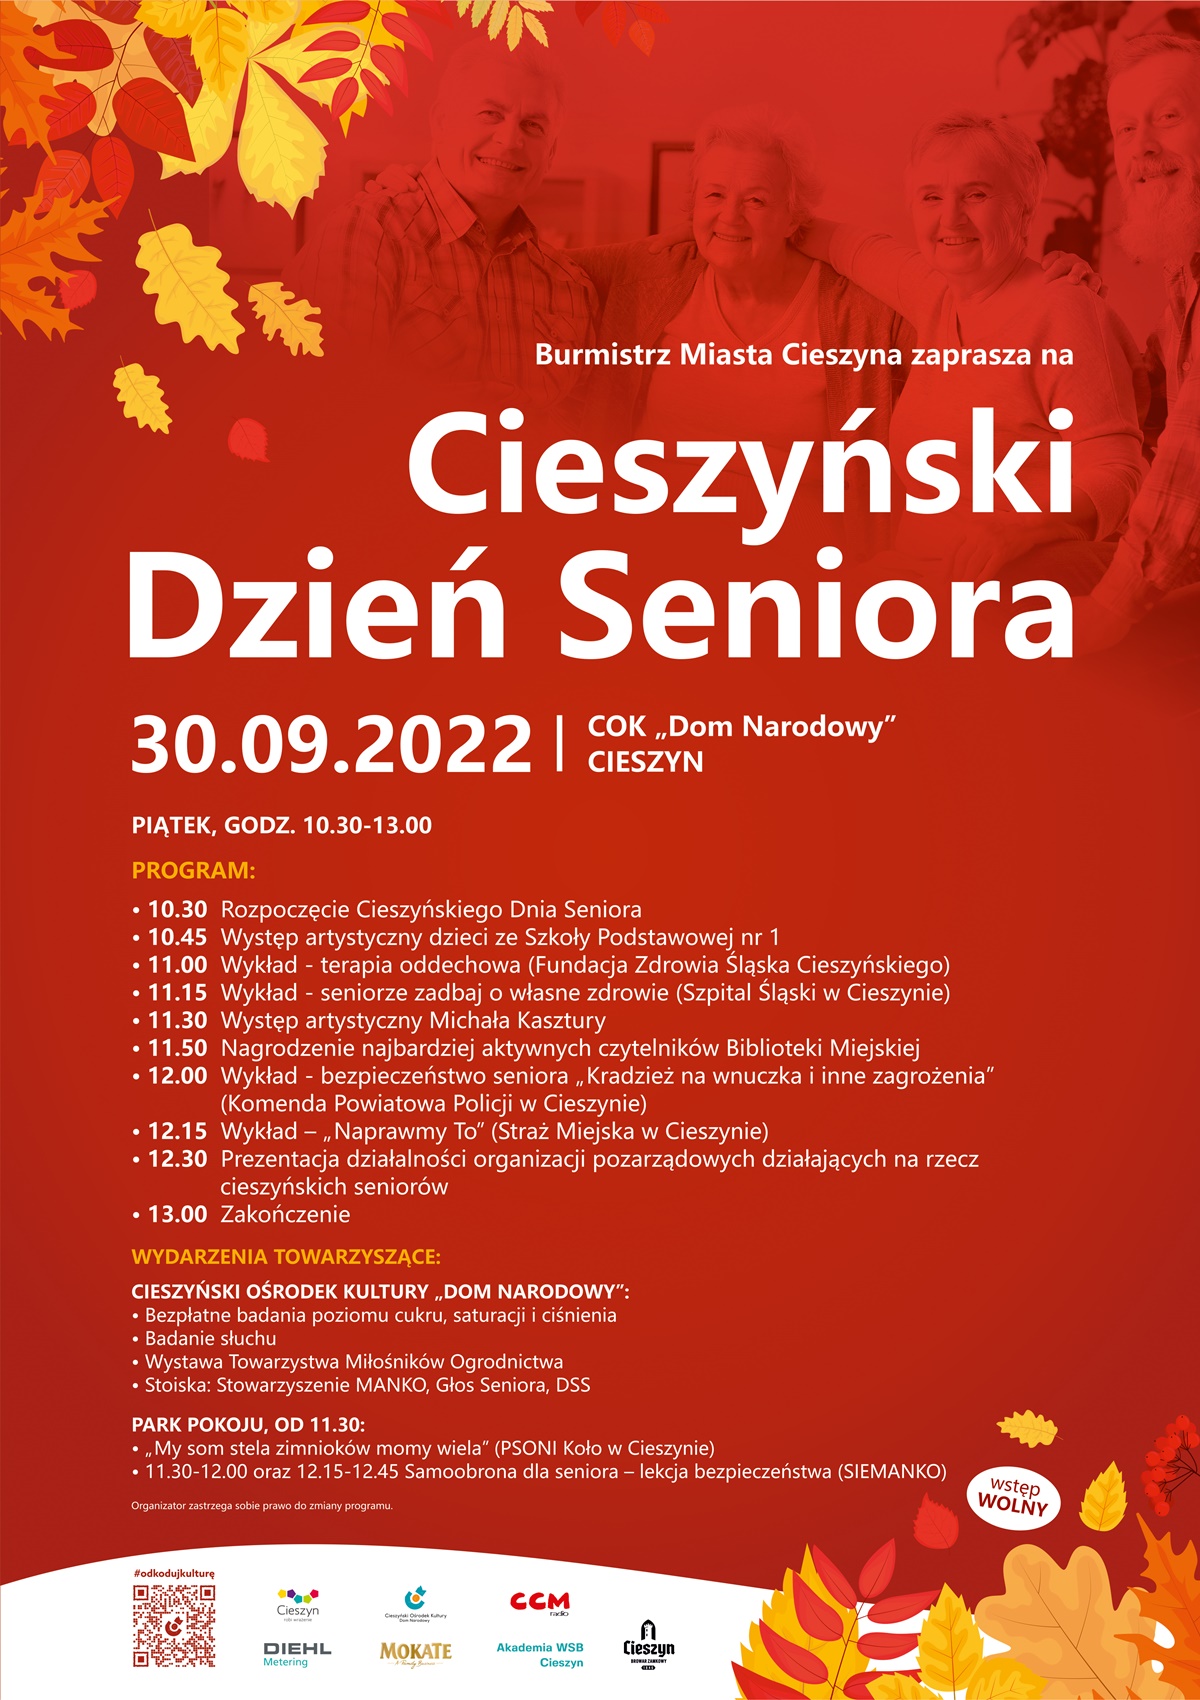 Cieszyński dzień Seniora, plakat promujący wydarzenie 